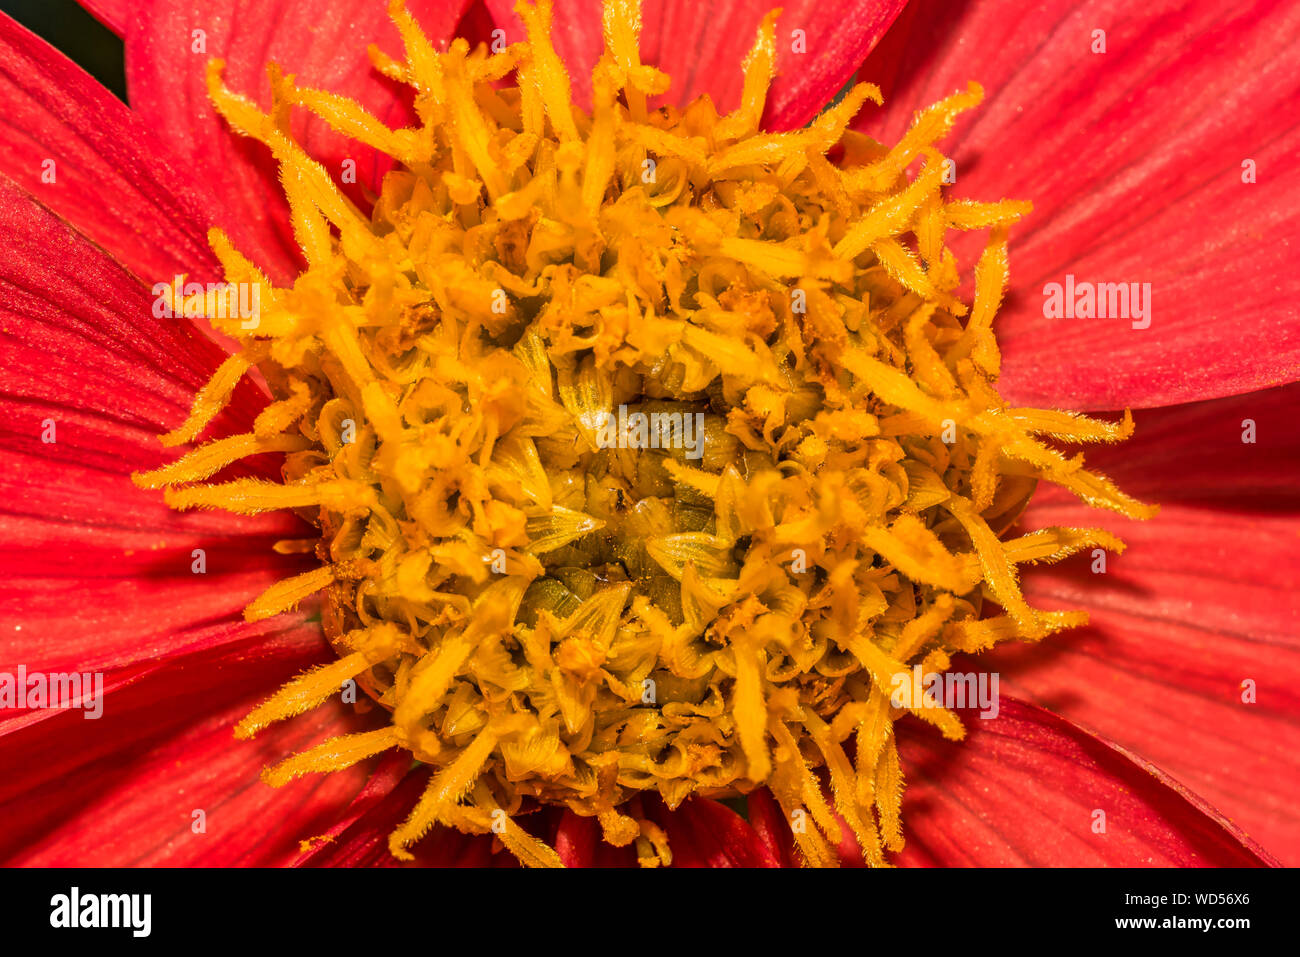 In der Nähe Bild von einem hellen roten Dahlie Blume mit einer leuchtend gelben Zentrum. Dahlia Blumen. Dahlie Anlage. Stockfoto